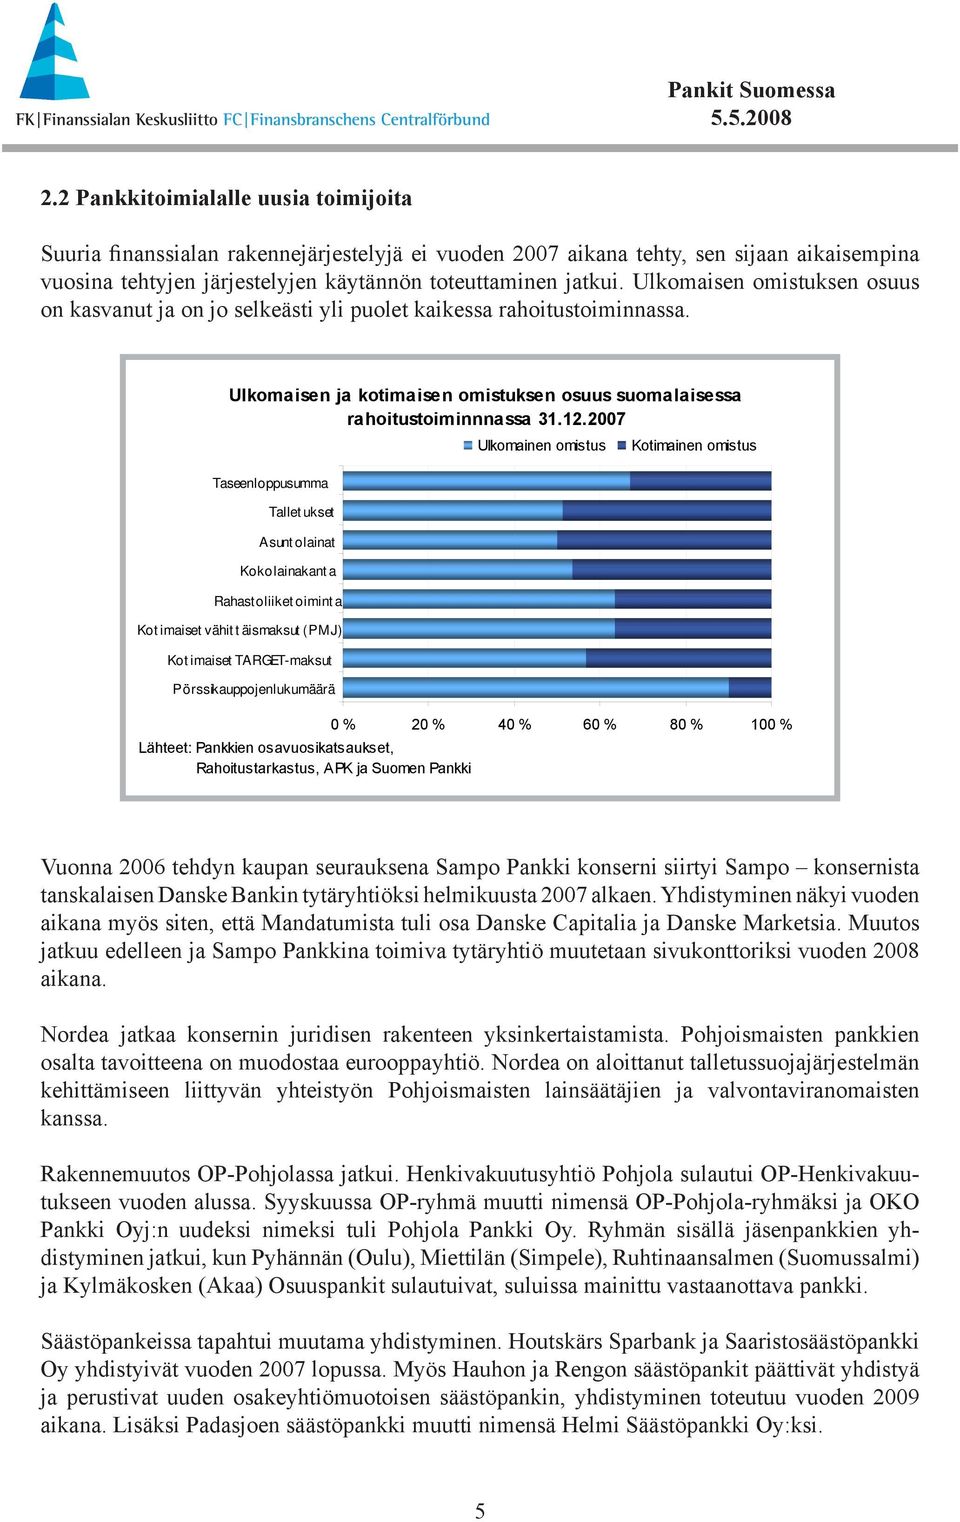 Kot imaiset vähit t äismaksut (PMJ) Kot imaiset TARGET-maksut Pörssikauppojen lukumäärä Ulkomaisen ja kotimaisen omistuksen osuus suomalaisessa rahoitustoiminnnassa 31.12.